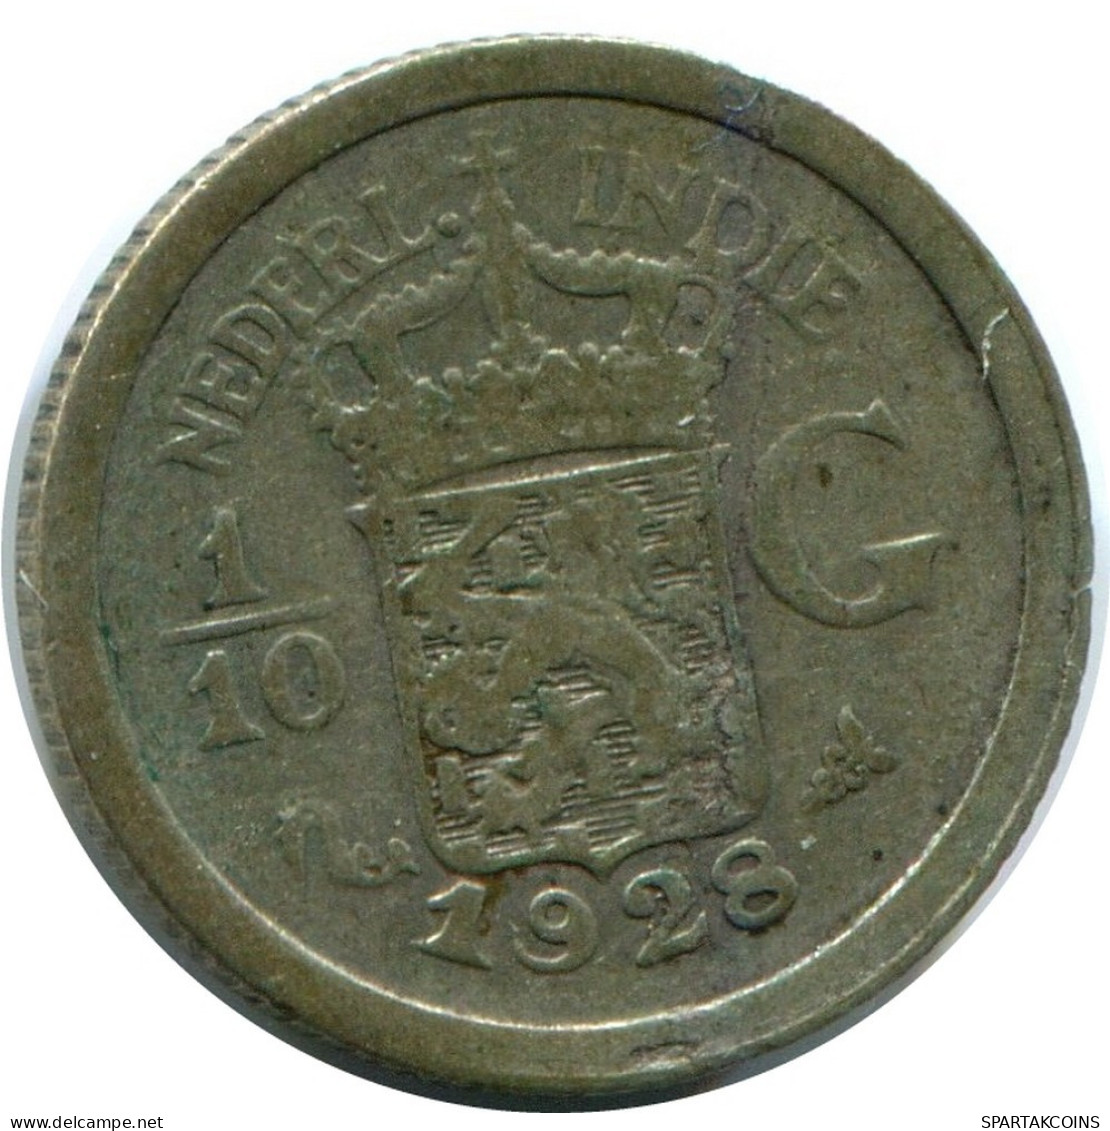 1/10 GULDEN 1928 NETHERLANDS EAST INDIES SILVER Coin #AZ104.U.A - Dutch East Indies